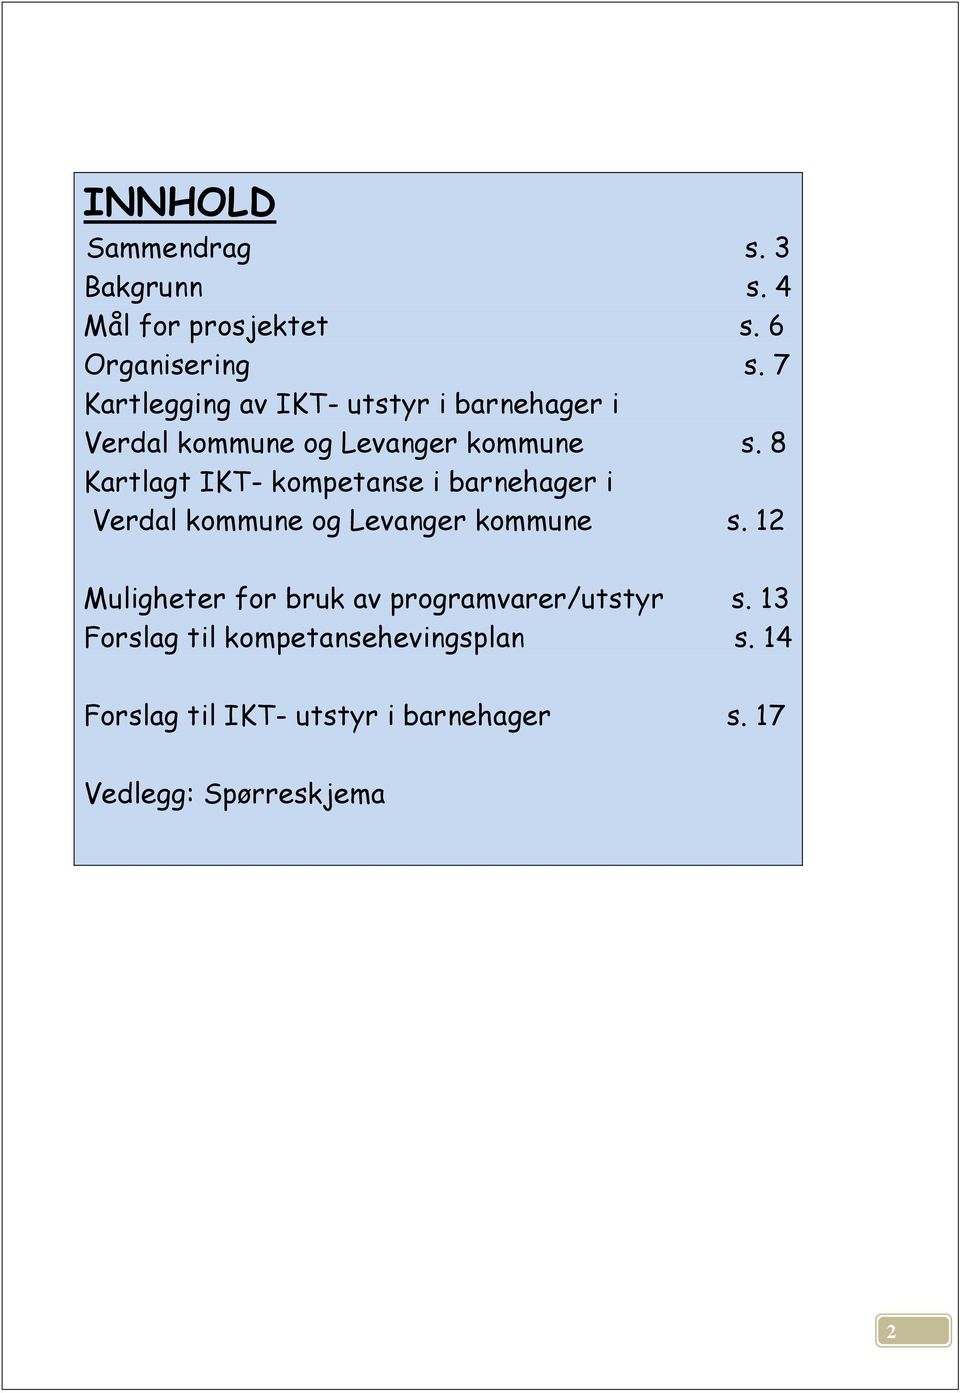 8 Kartlagt IKT- kompetanse i barnehager i Verdal kommune og Levanger kommune s.